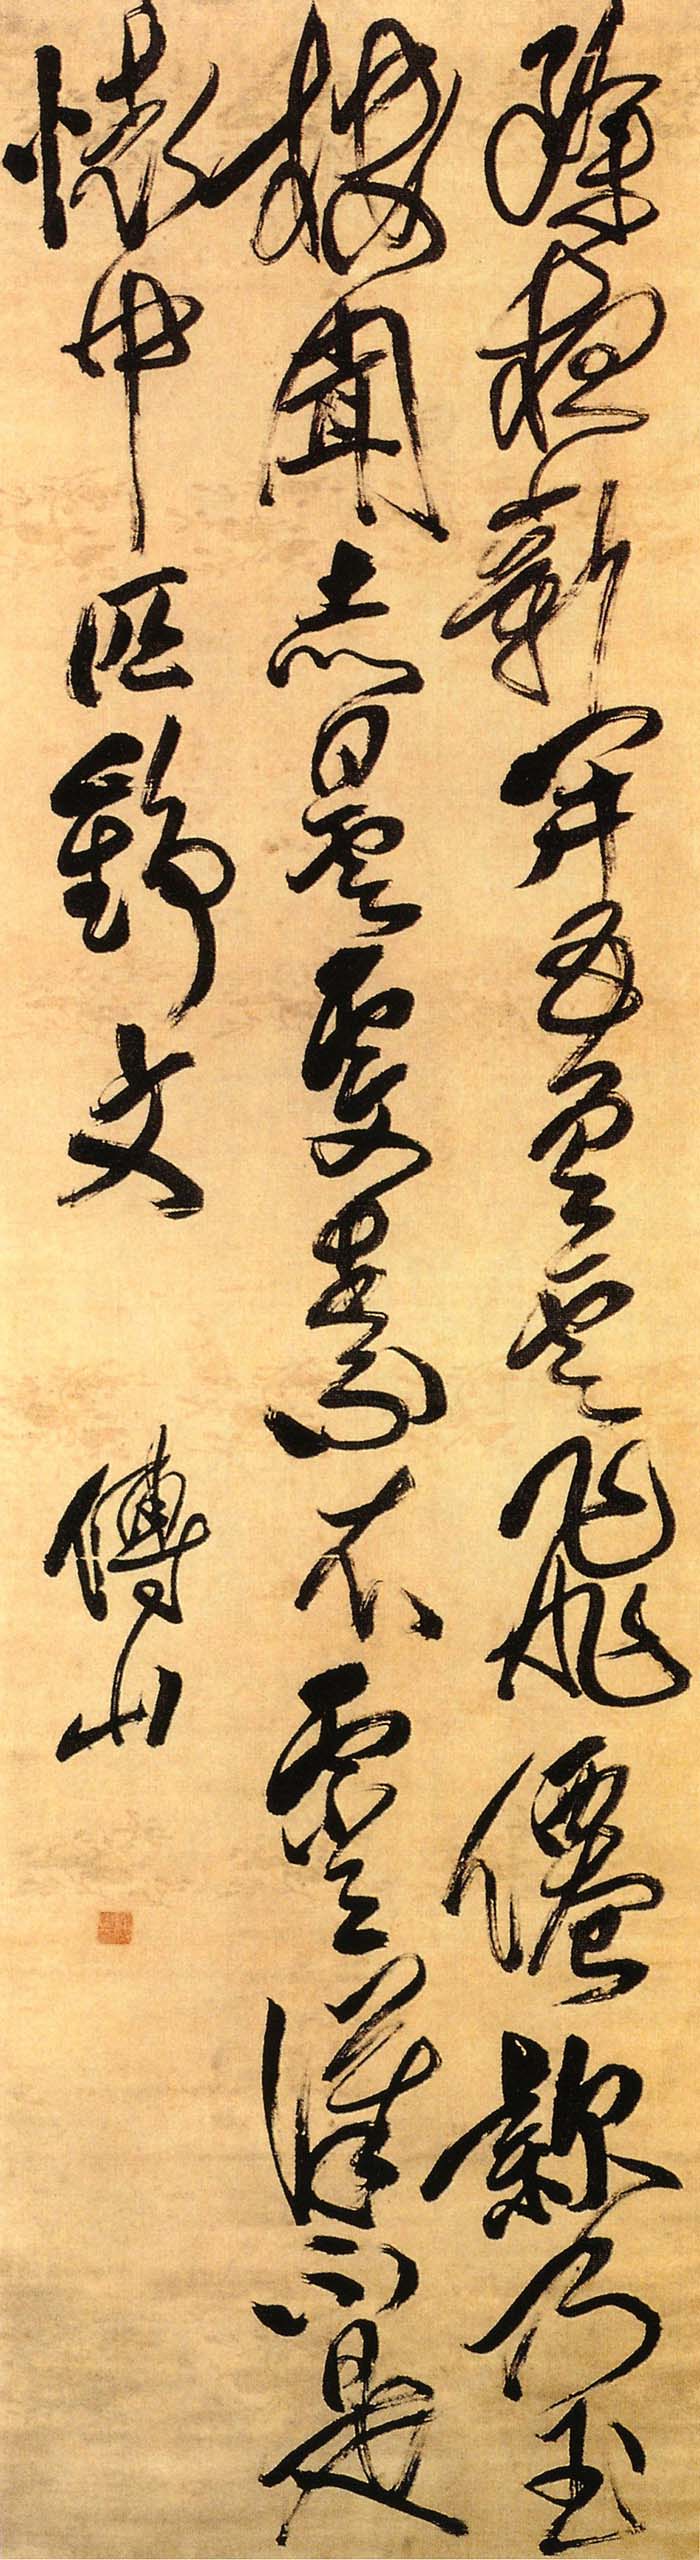 傅山《行草足梦中句七言诗》轴-北京故宫博物院(图1)